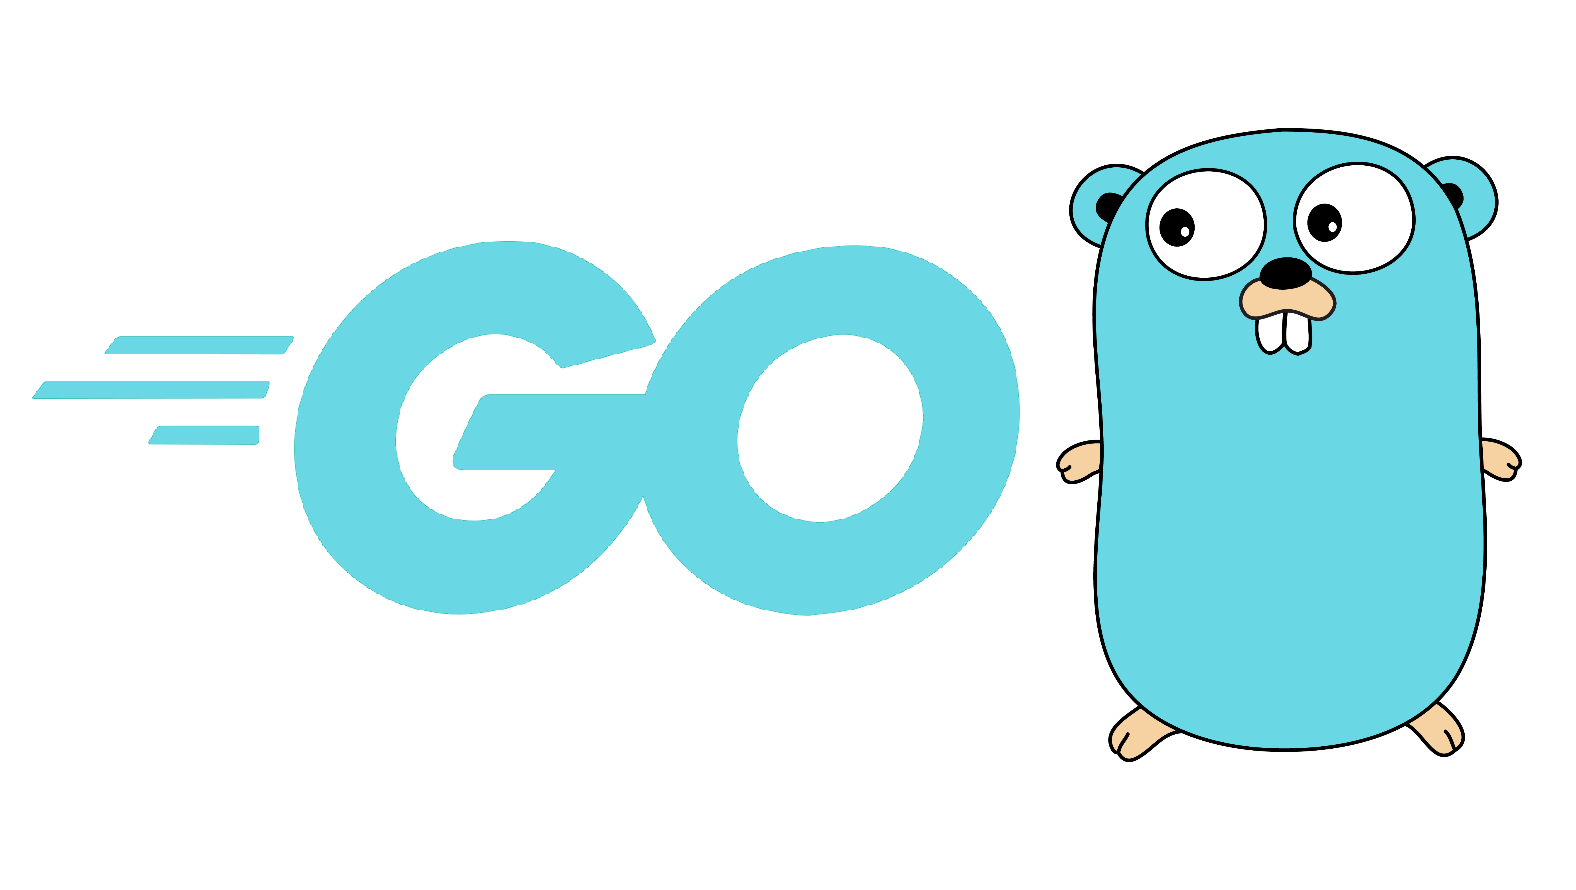 Go coding language logo 